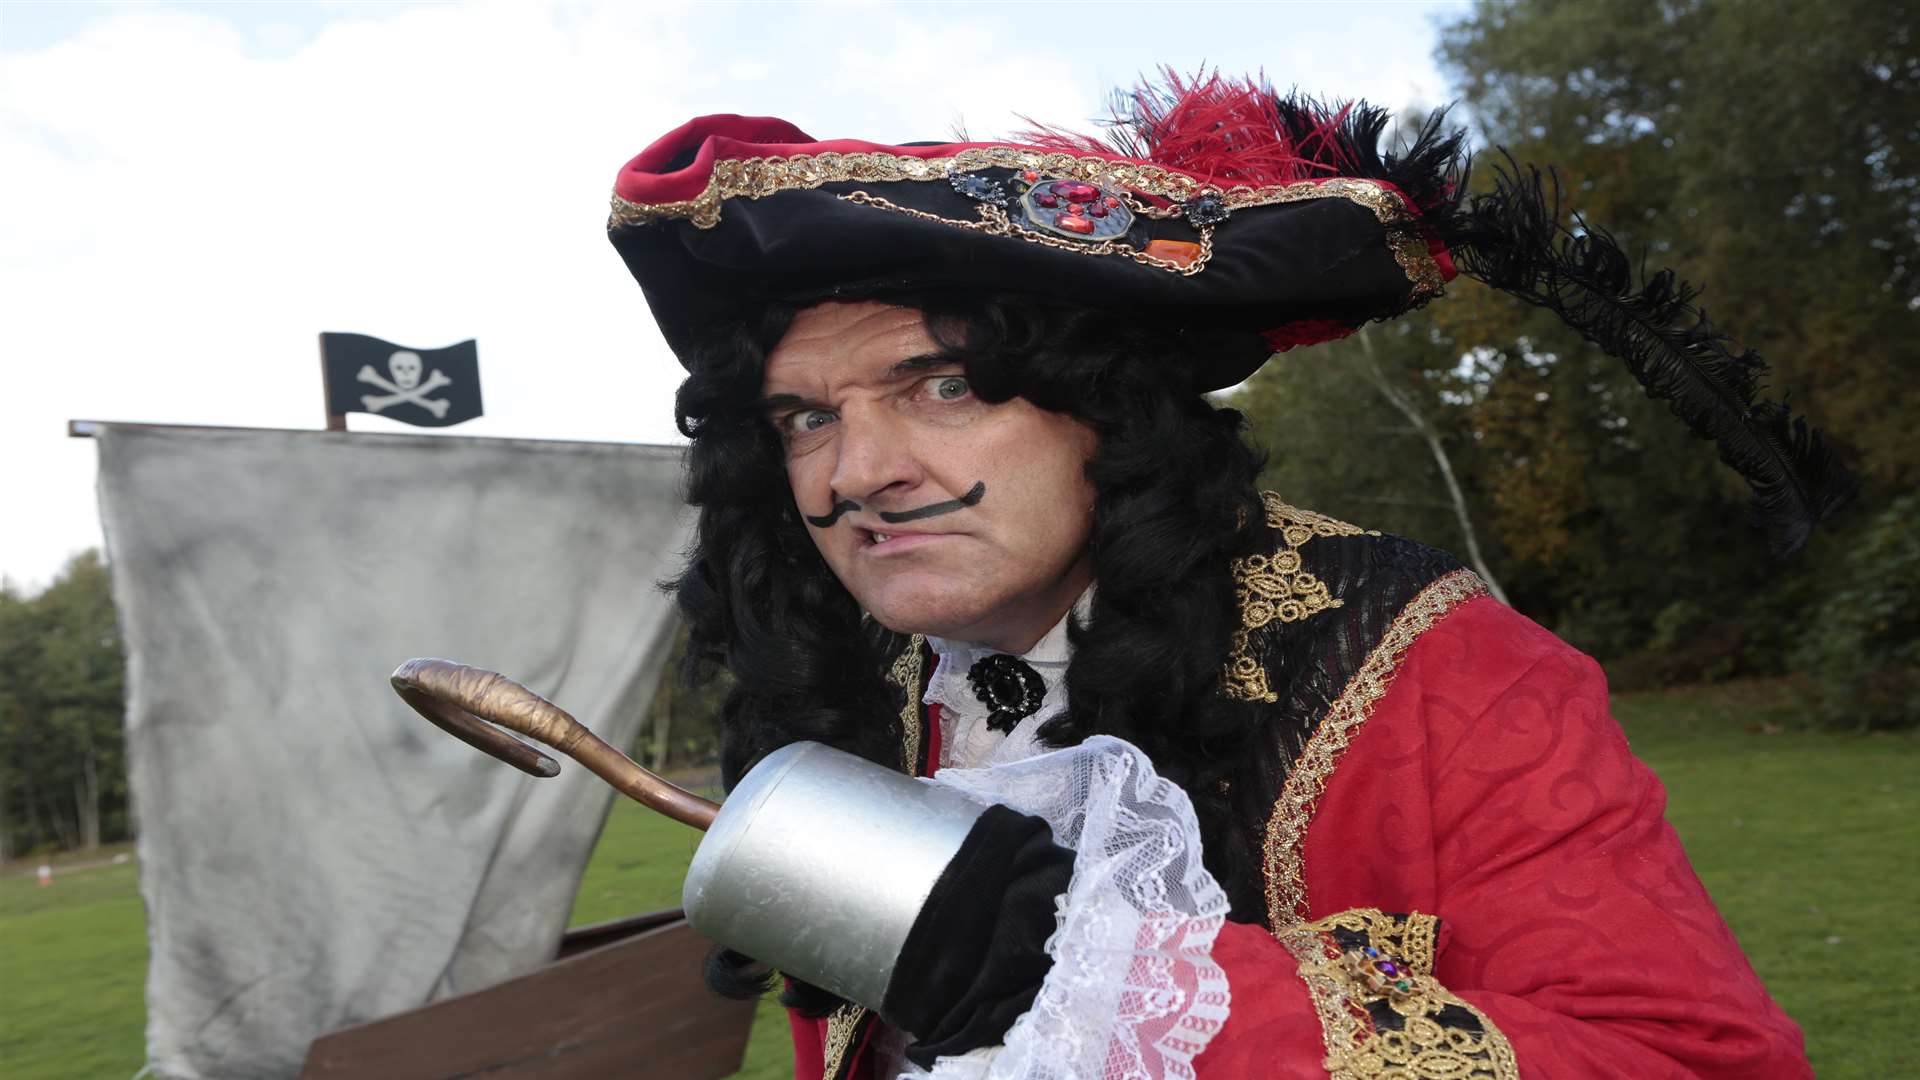 Mark Moraghan as Hook, in Peter Pan pantomime